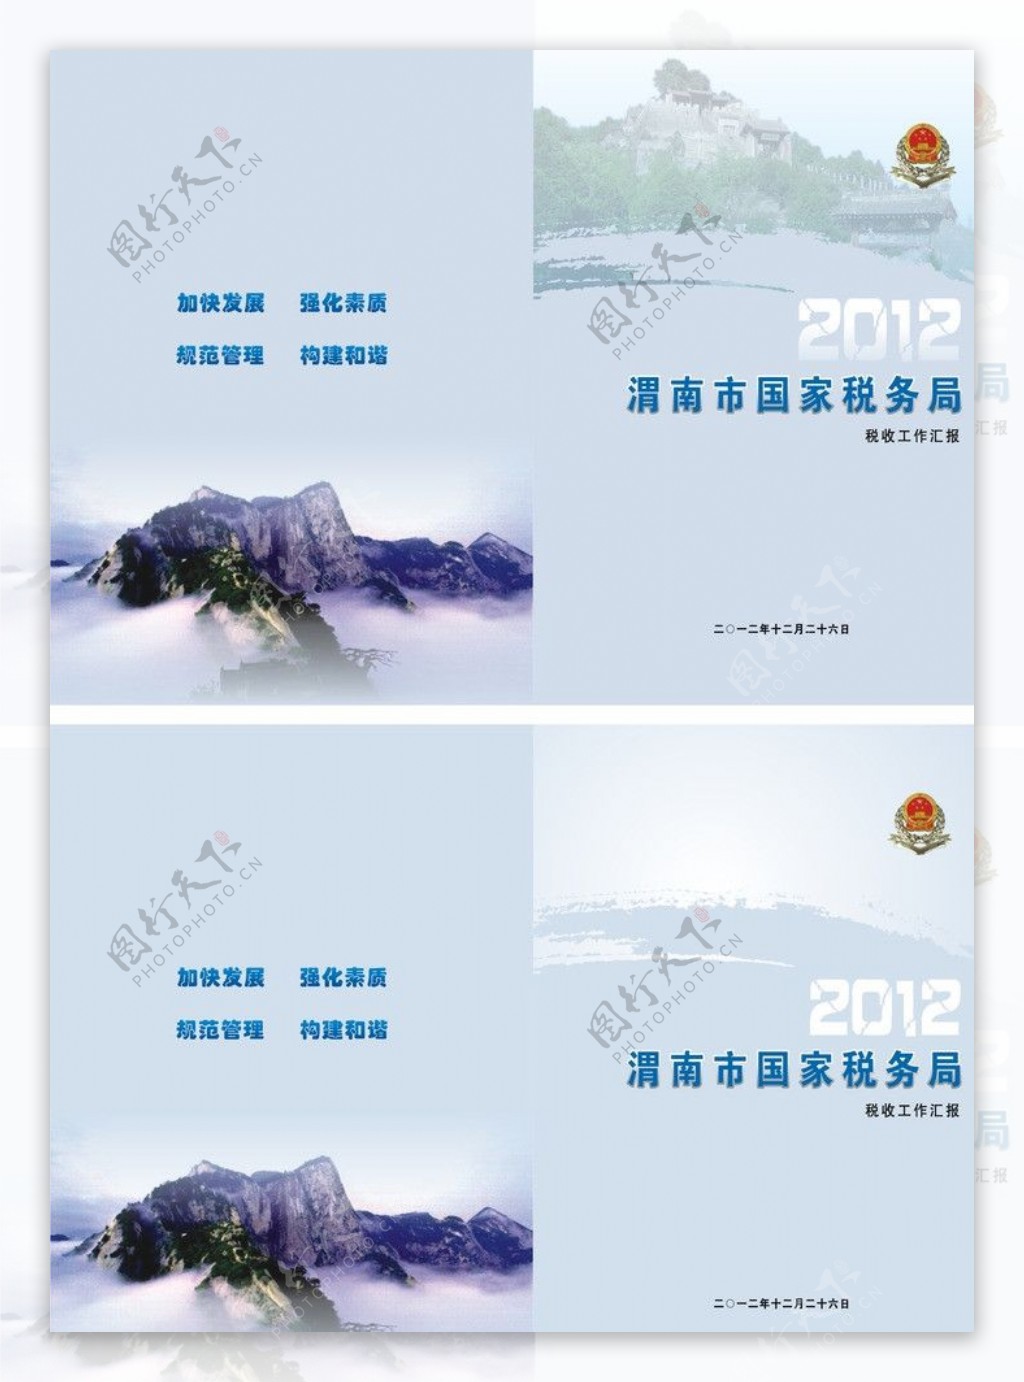 渭南国税局封面图片